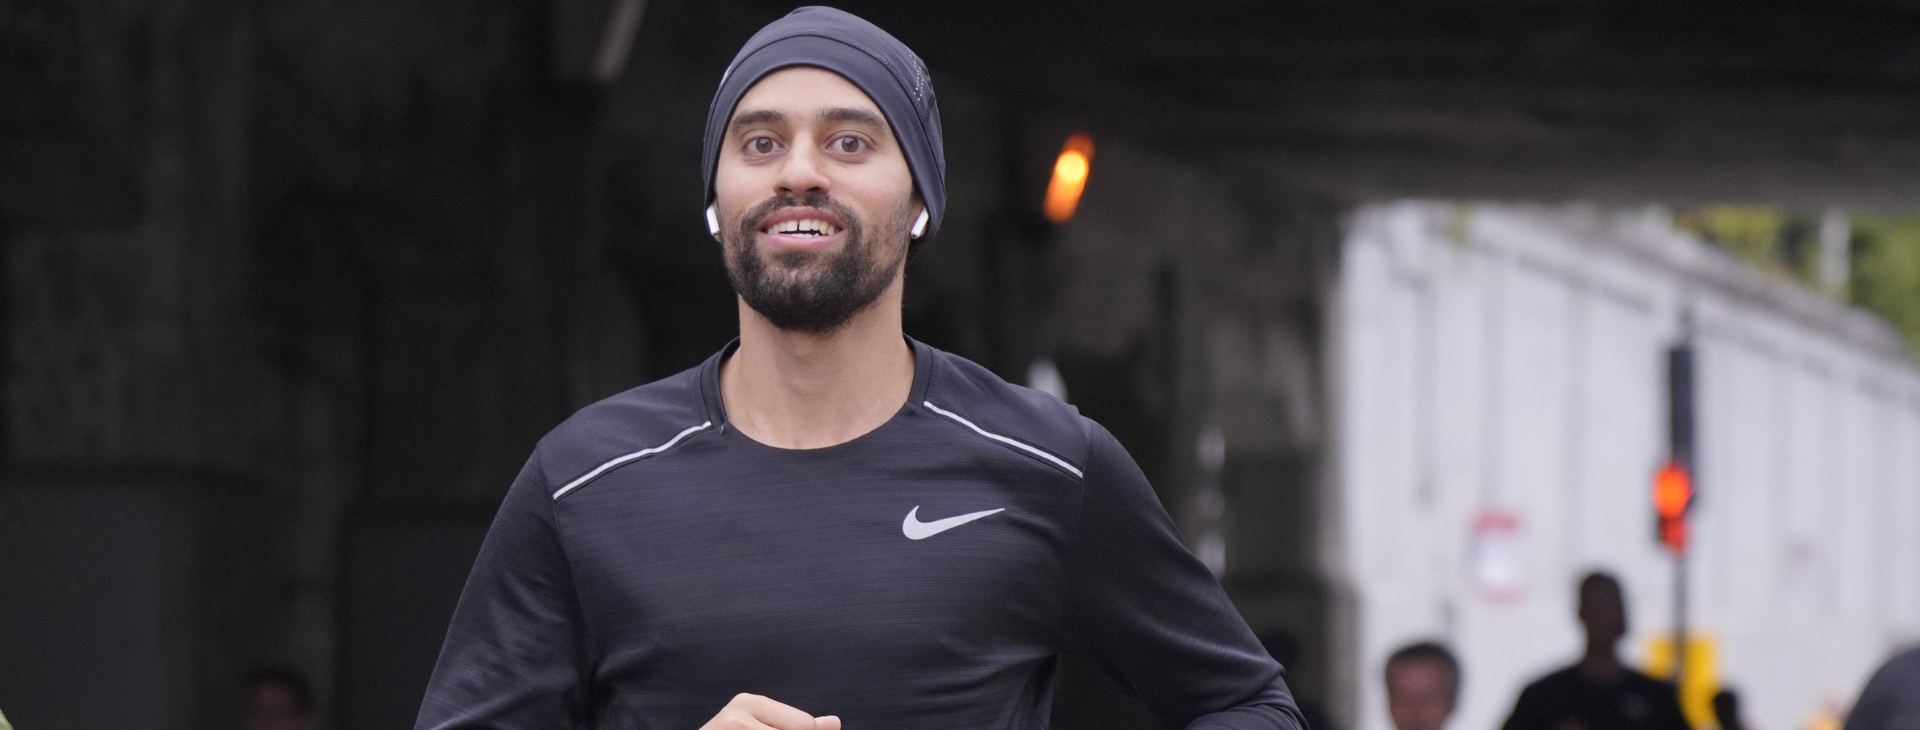 Jad jawad, un patient du CHUM, s'est lancé le défi de courir le Marathon de Montréal afin d'amasser des fonds en reconnaissance aux soins qu'il a reçus. Découvrez son histoire inspirante.